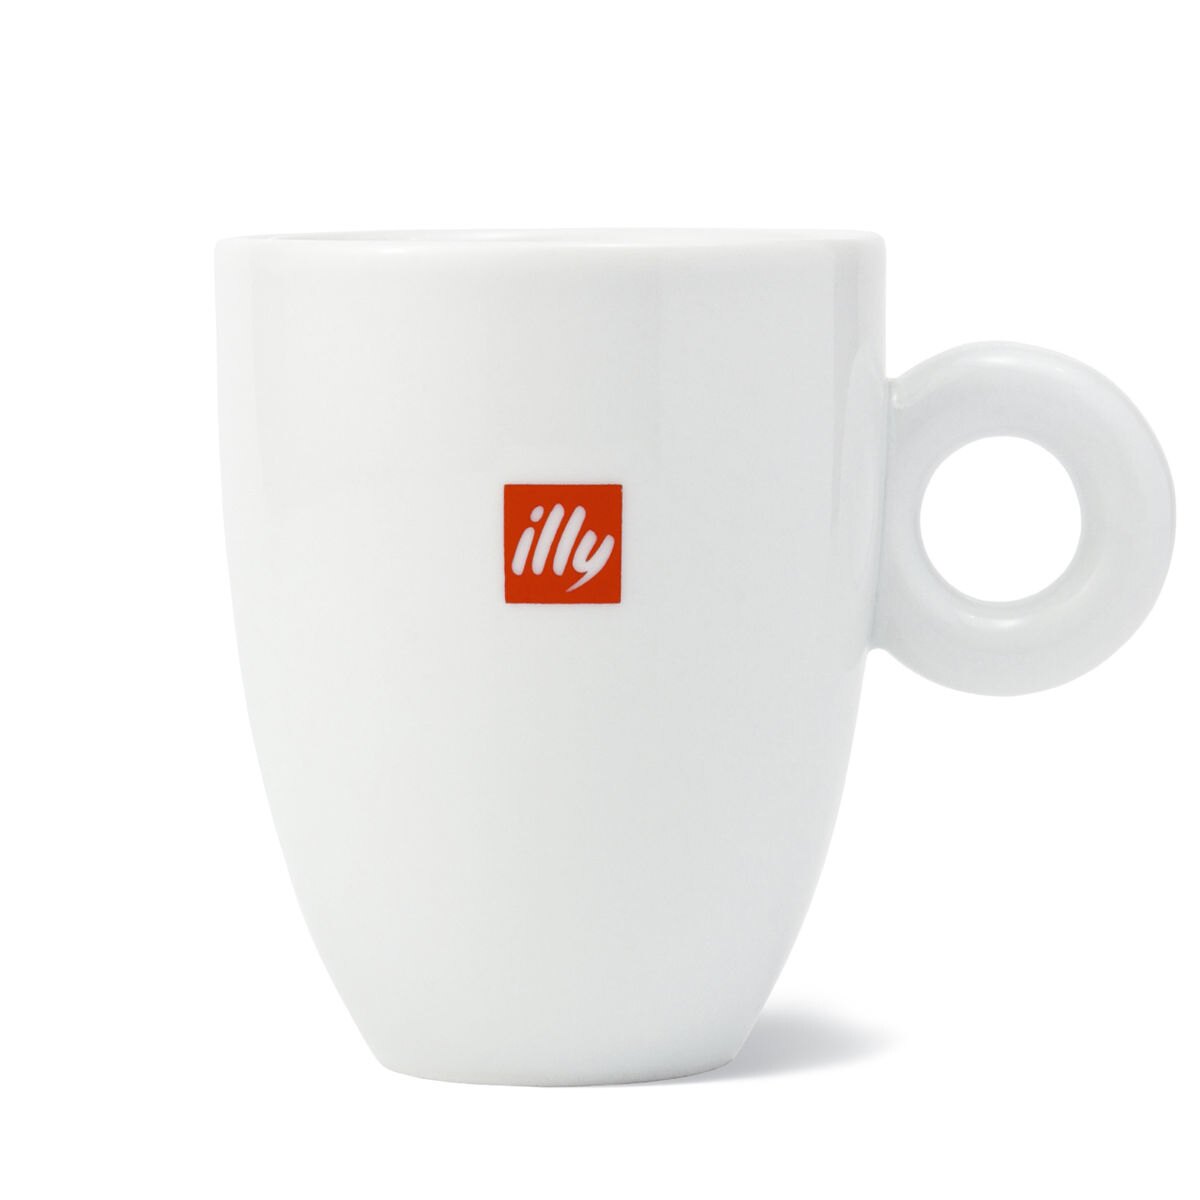 illy Logo Mug - 8oz